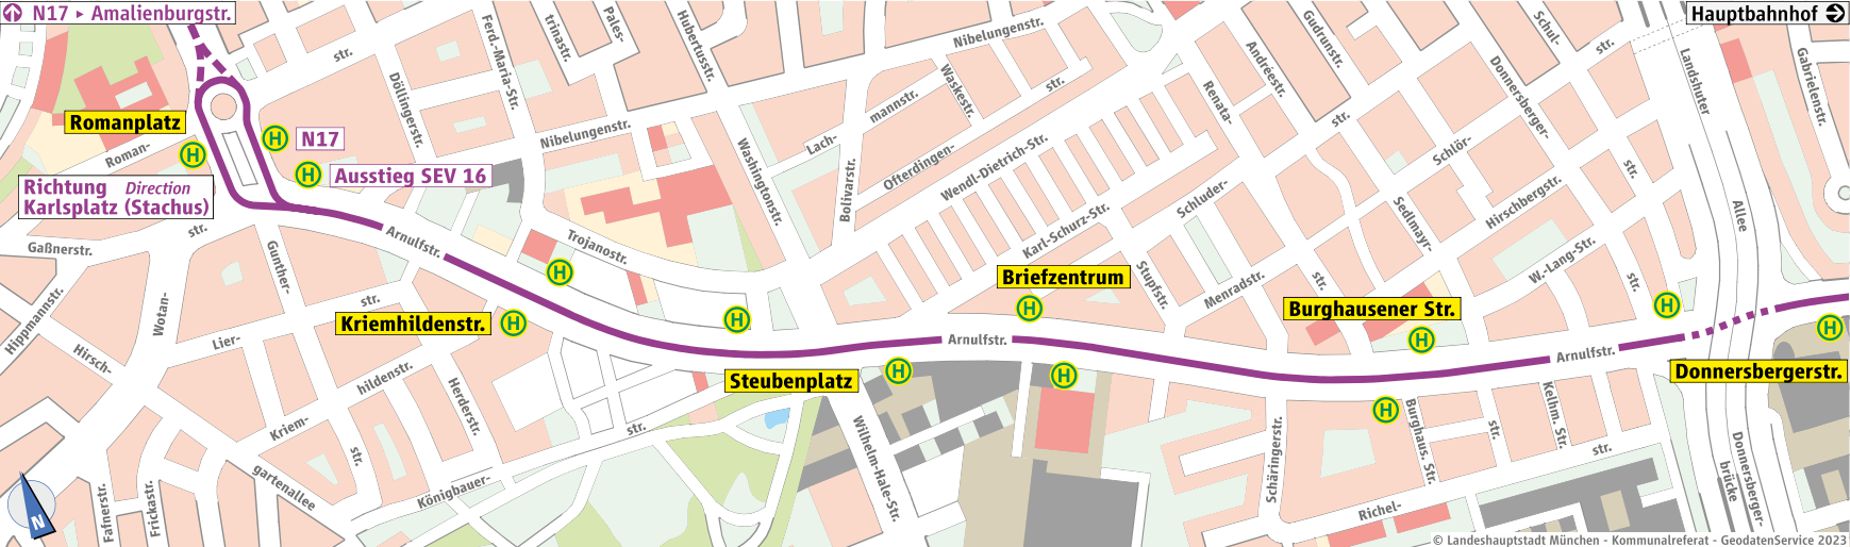 Grafische Darstellung des Ersatzverkehrs zwischen den Haltestellen Romanplatz und Donnersbergerstraße.